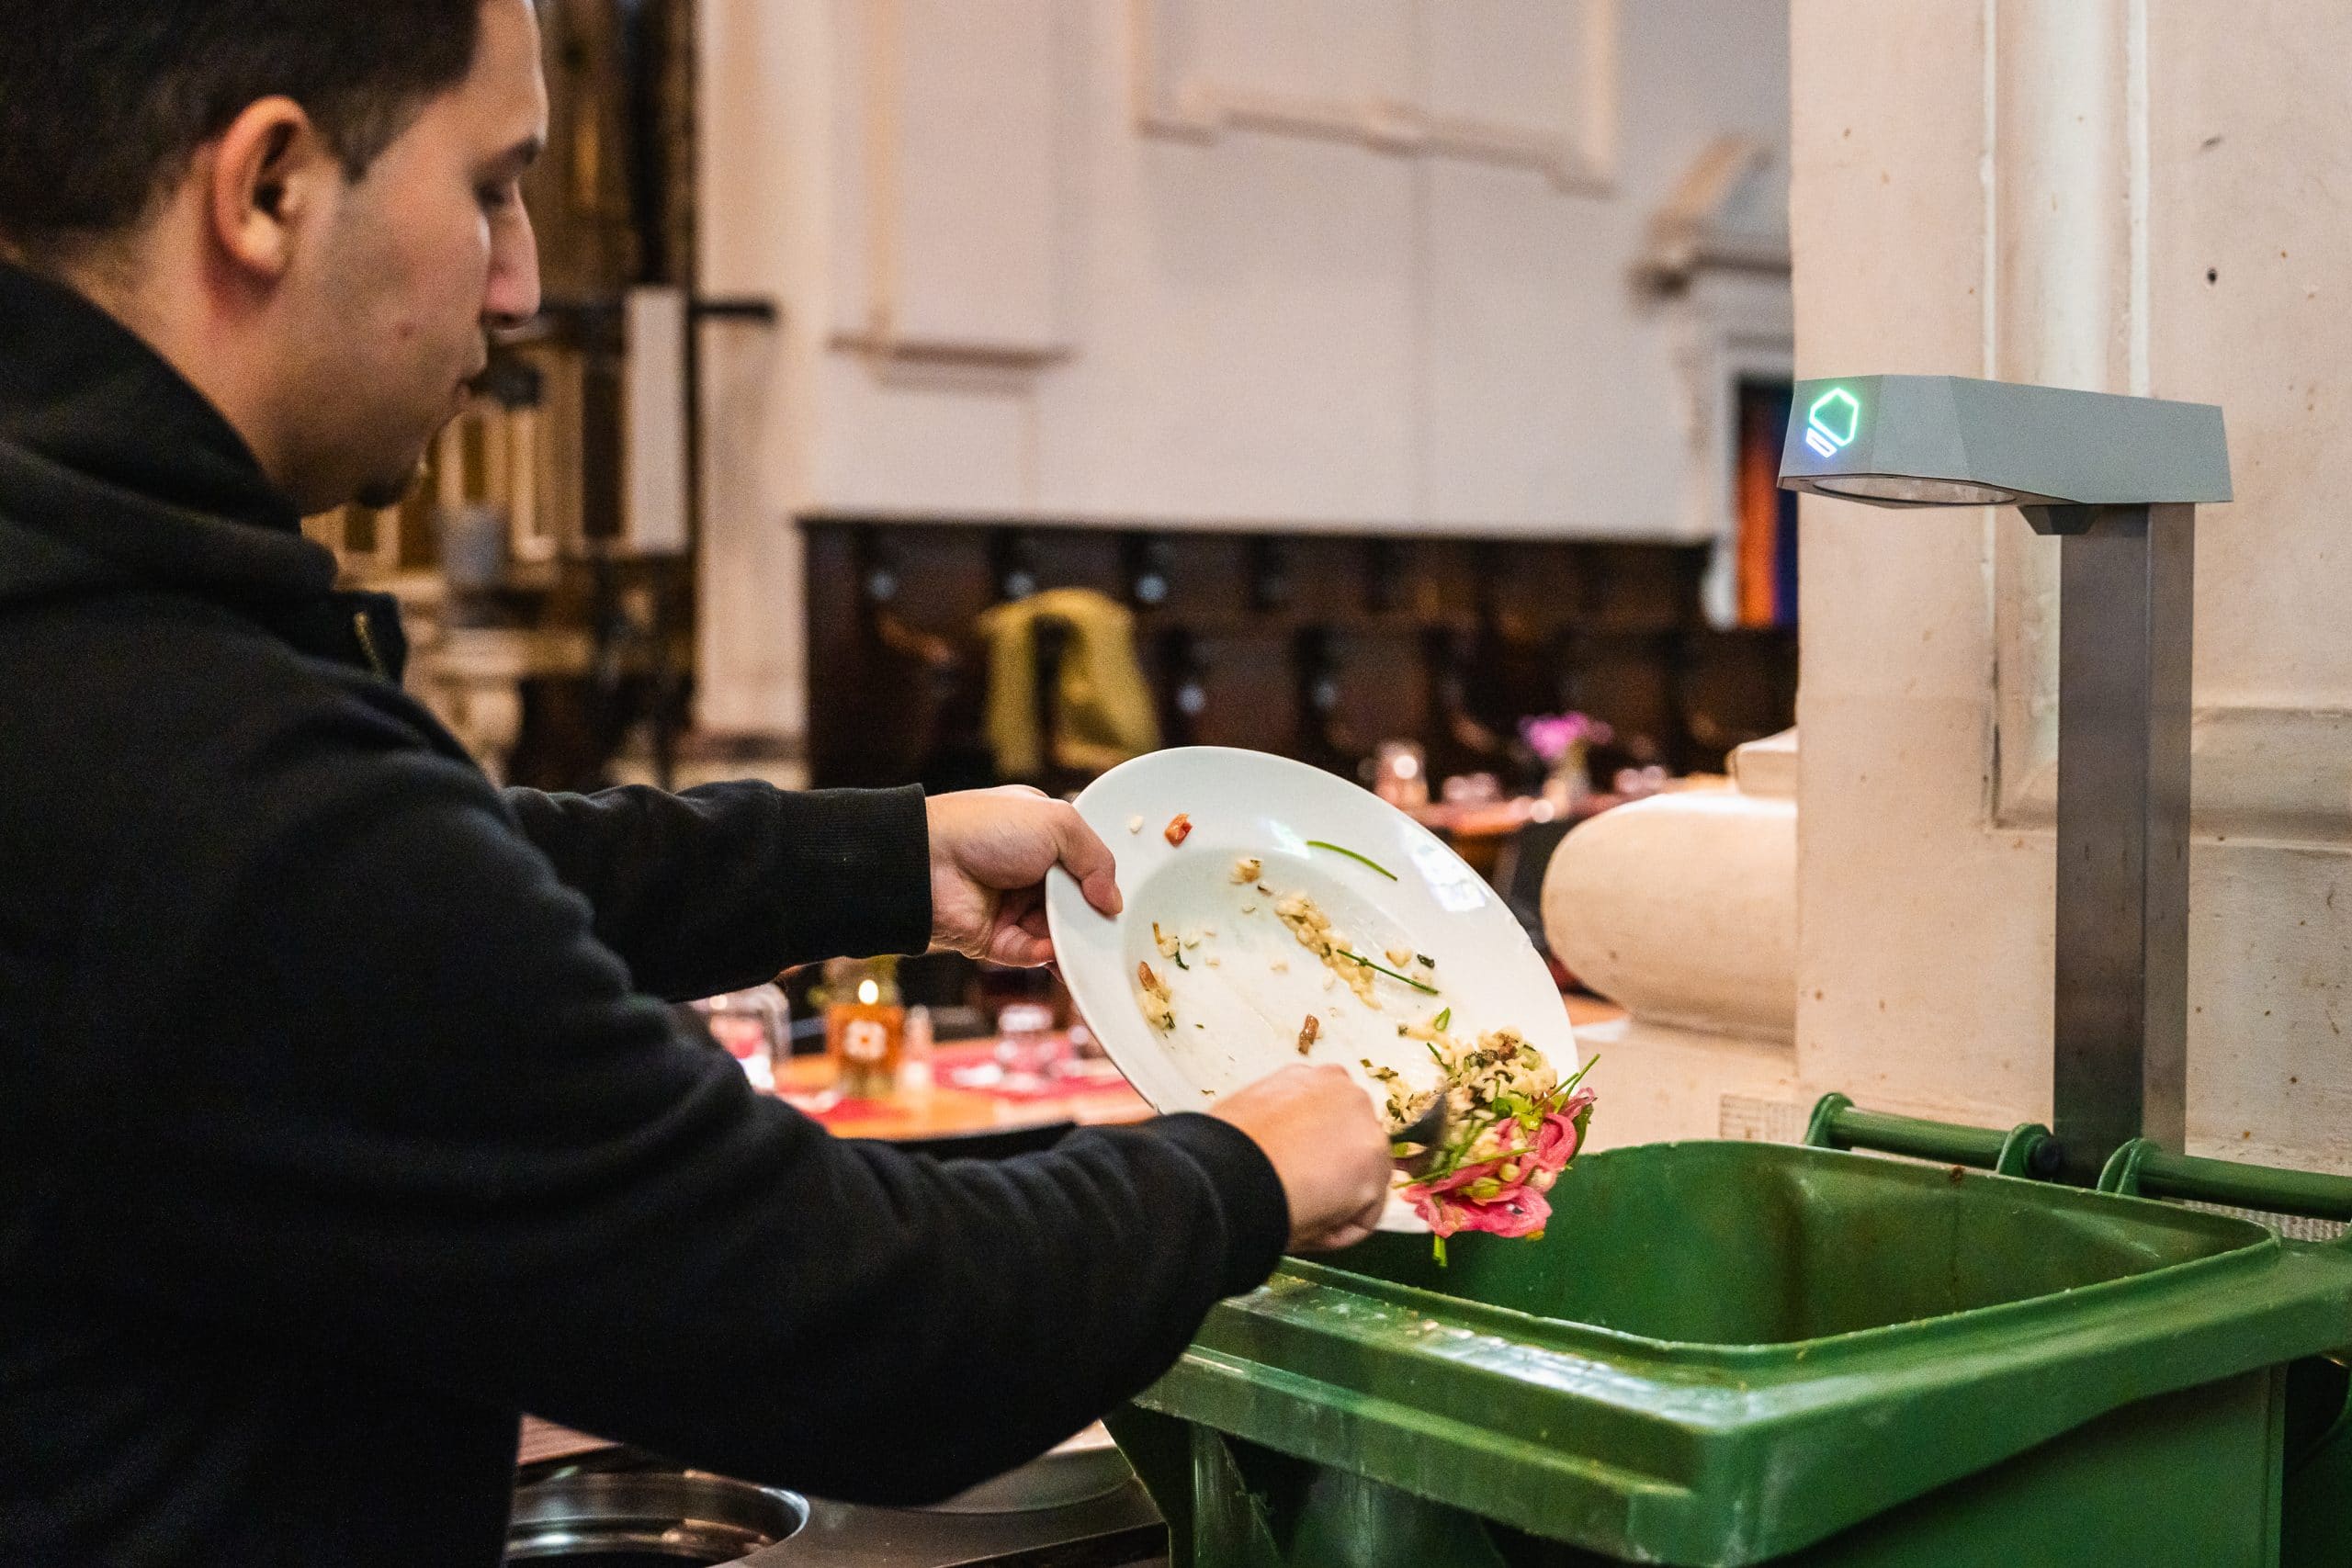 Gentse horecazaken kunnen gratis 'food waste monitor' testen